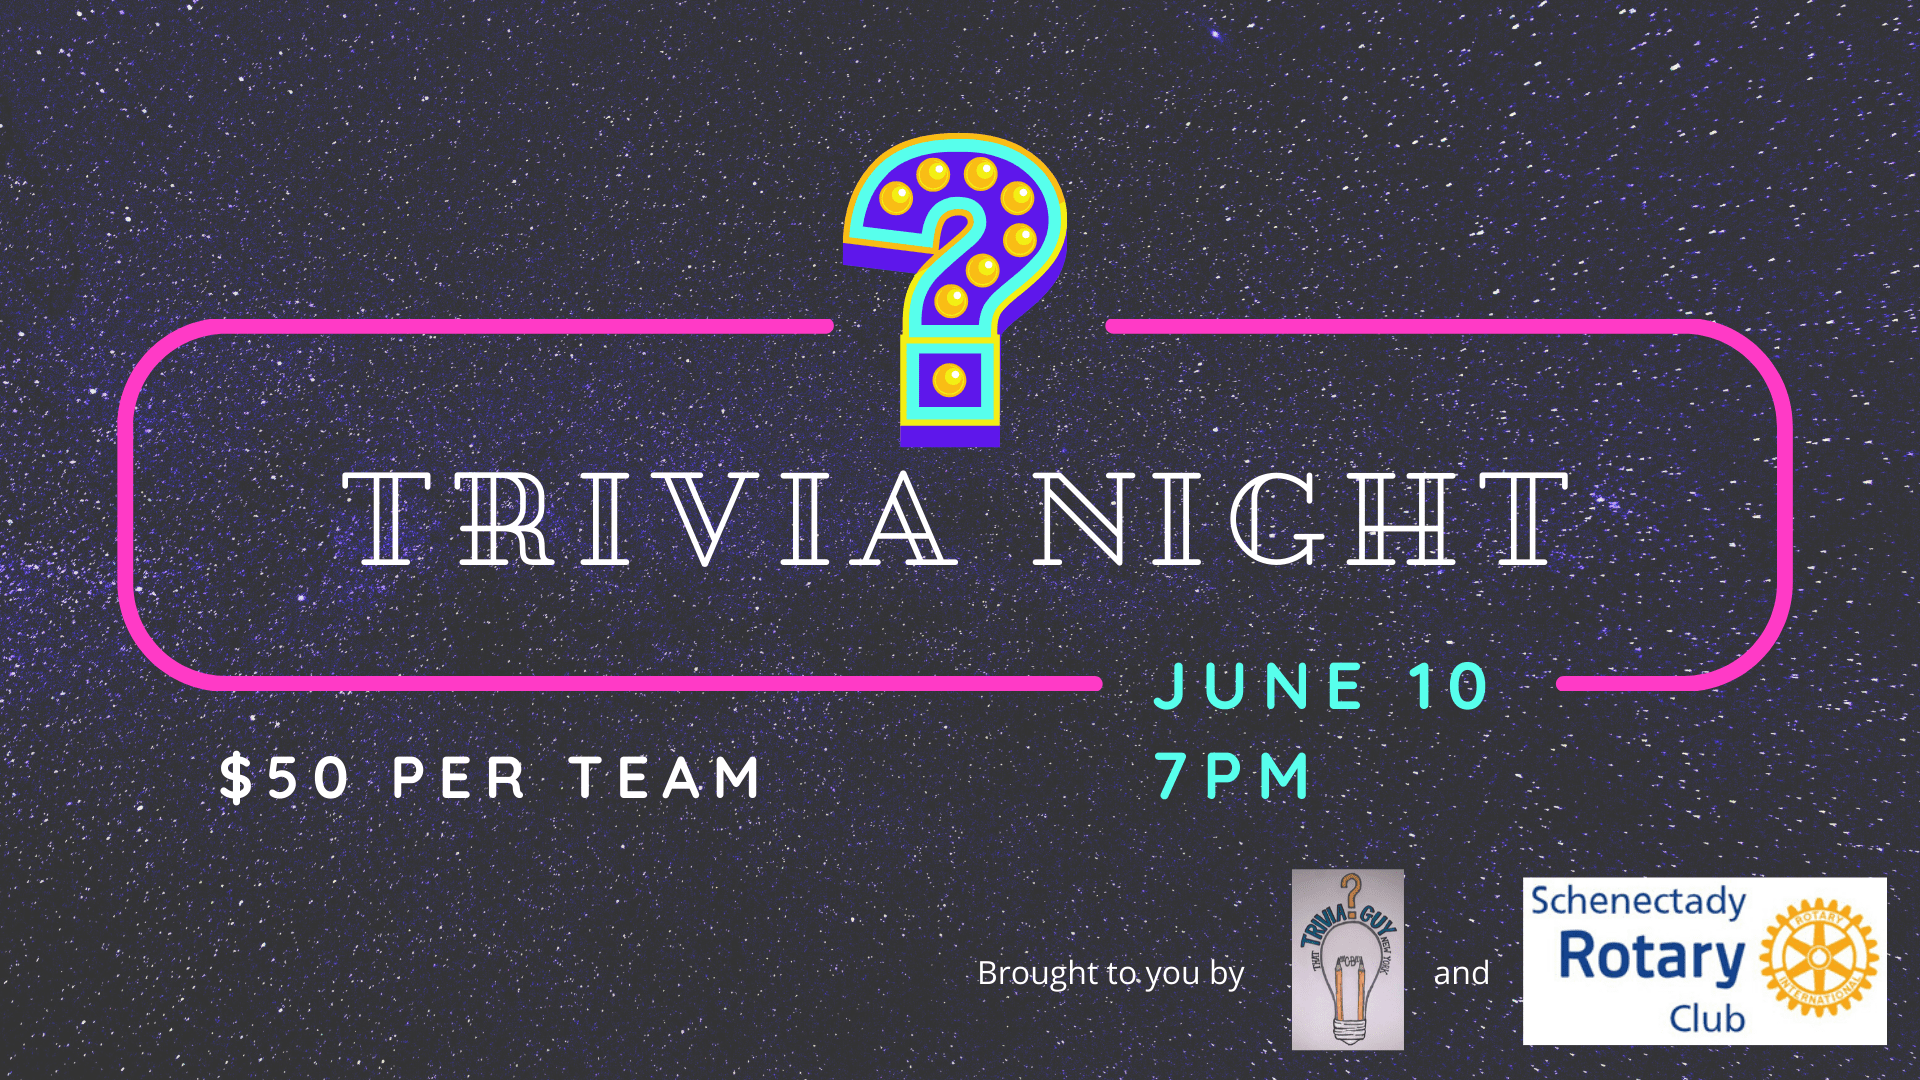 Trivia Night June 10 7pm $50 per team